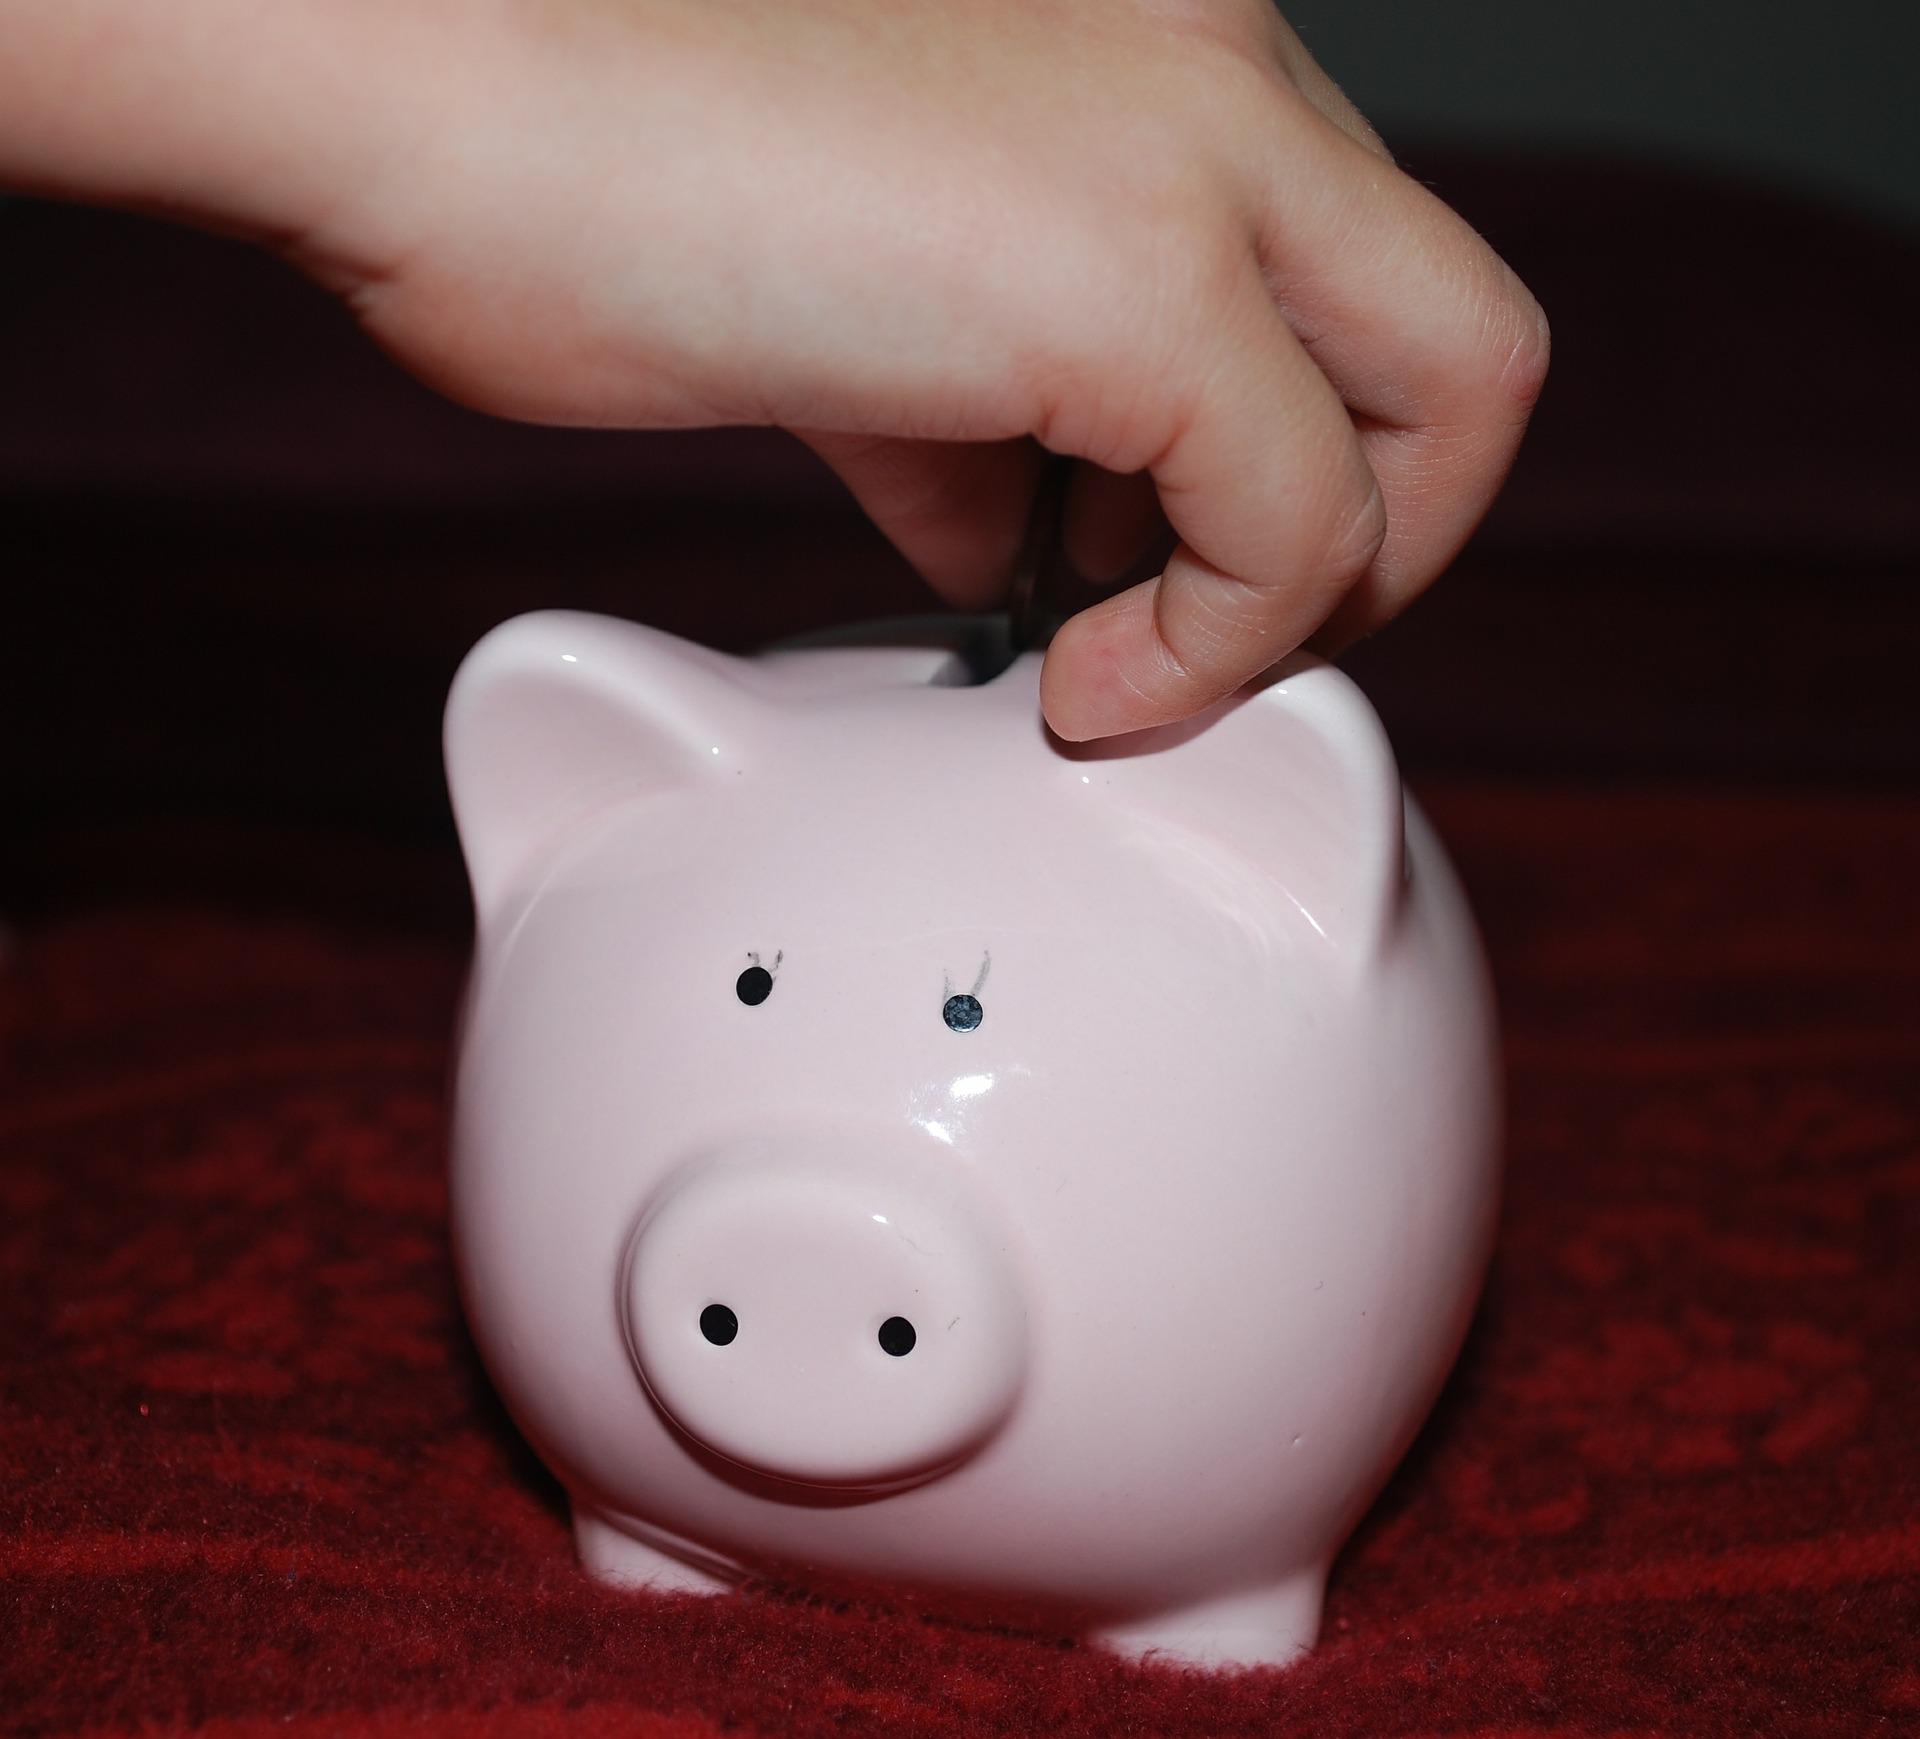 Tobias bewahrte all seine täglichen Ersparnisse in einem Sparschwein auf. | Quelle: Pixabay